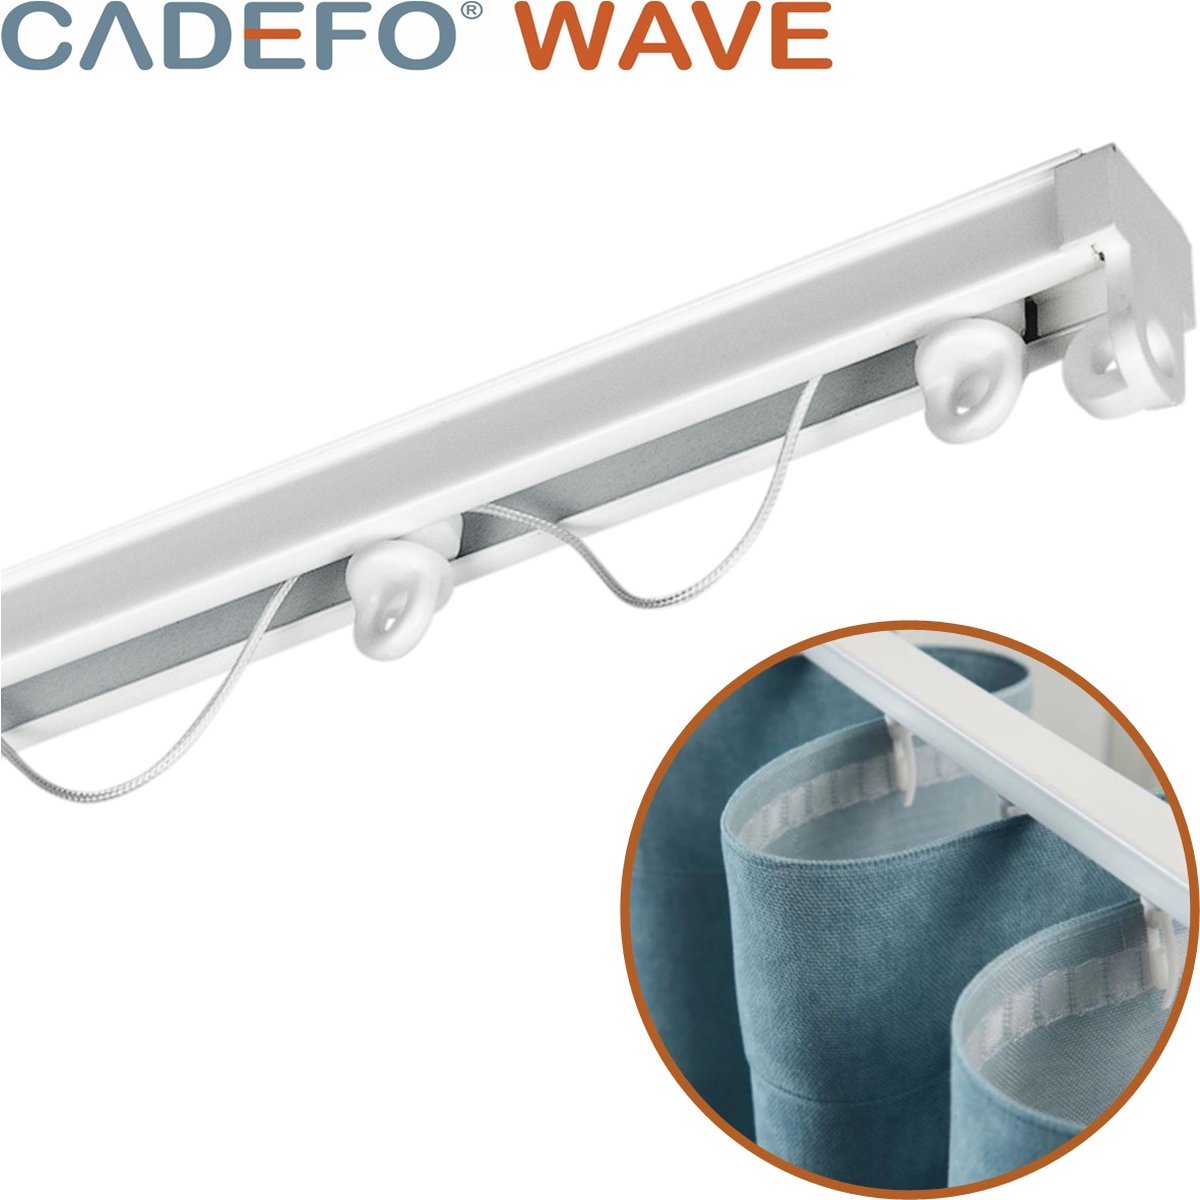 CADEFO WAVE (151 - 200 cm) Gordijnrails - Compleet op maat! - UIT 1 STUK - Leverbaar tot 6 meter - Plafondbevestiging - Lengte 200 cm - 2 meter